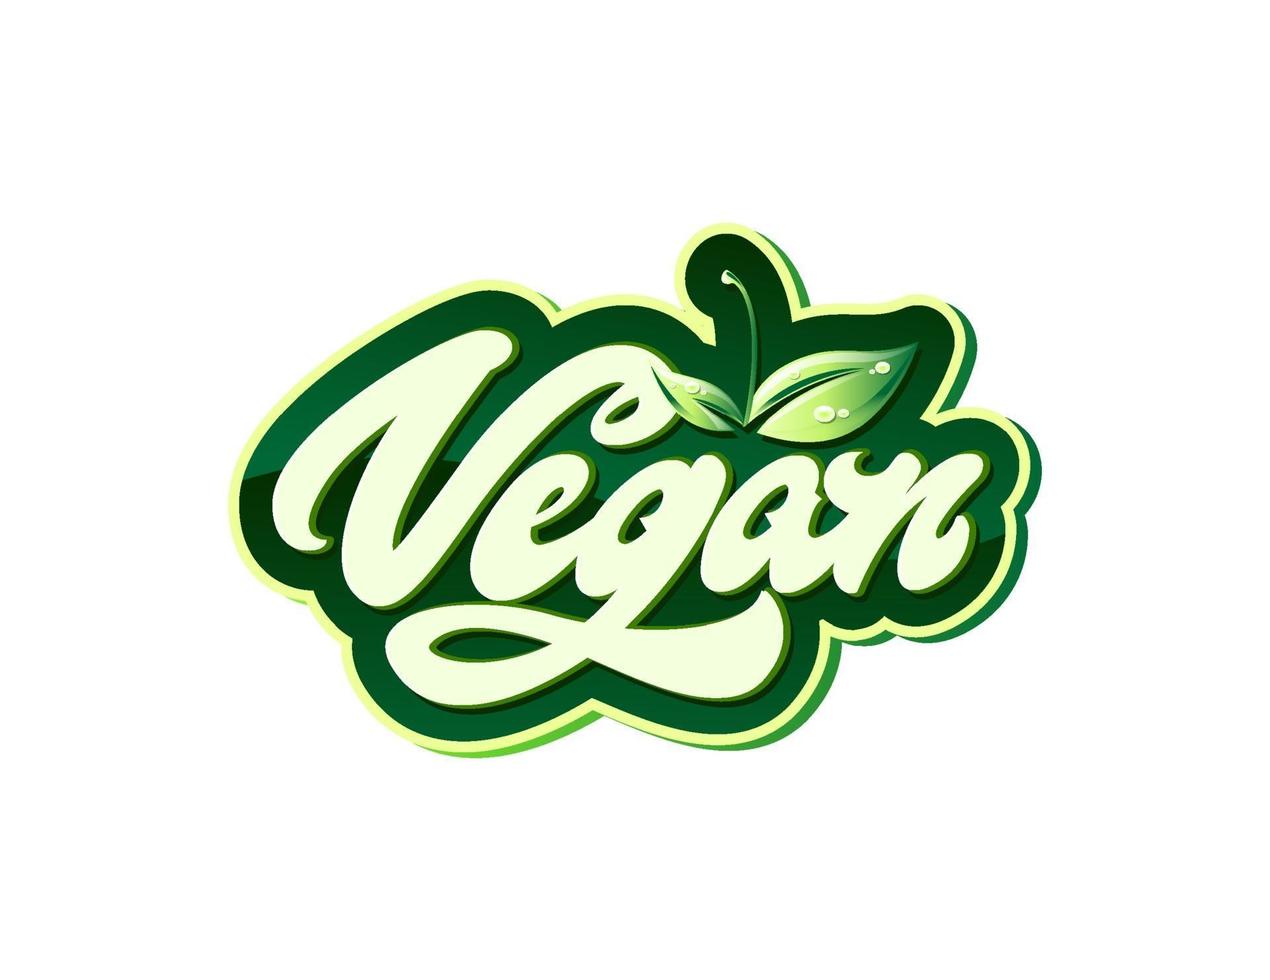 veganistisch in beletteringstijl met bladeren met druppels. vectorelementen voor labels, logo's, insignes, stickers of pictogrammen. vector